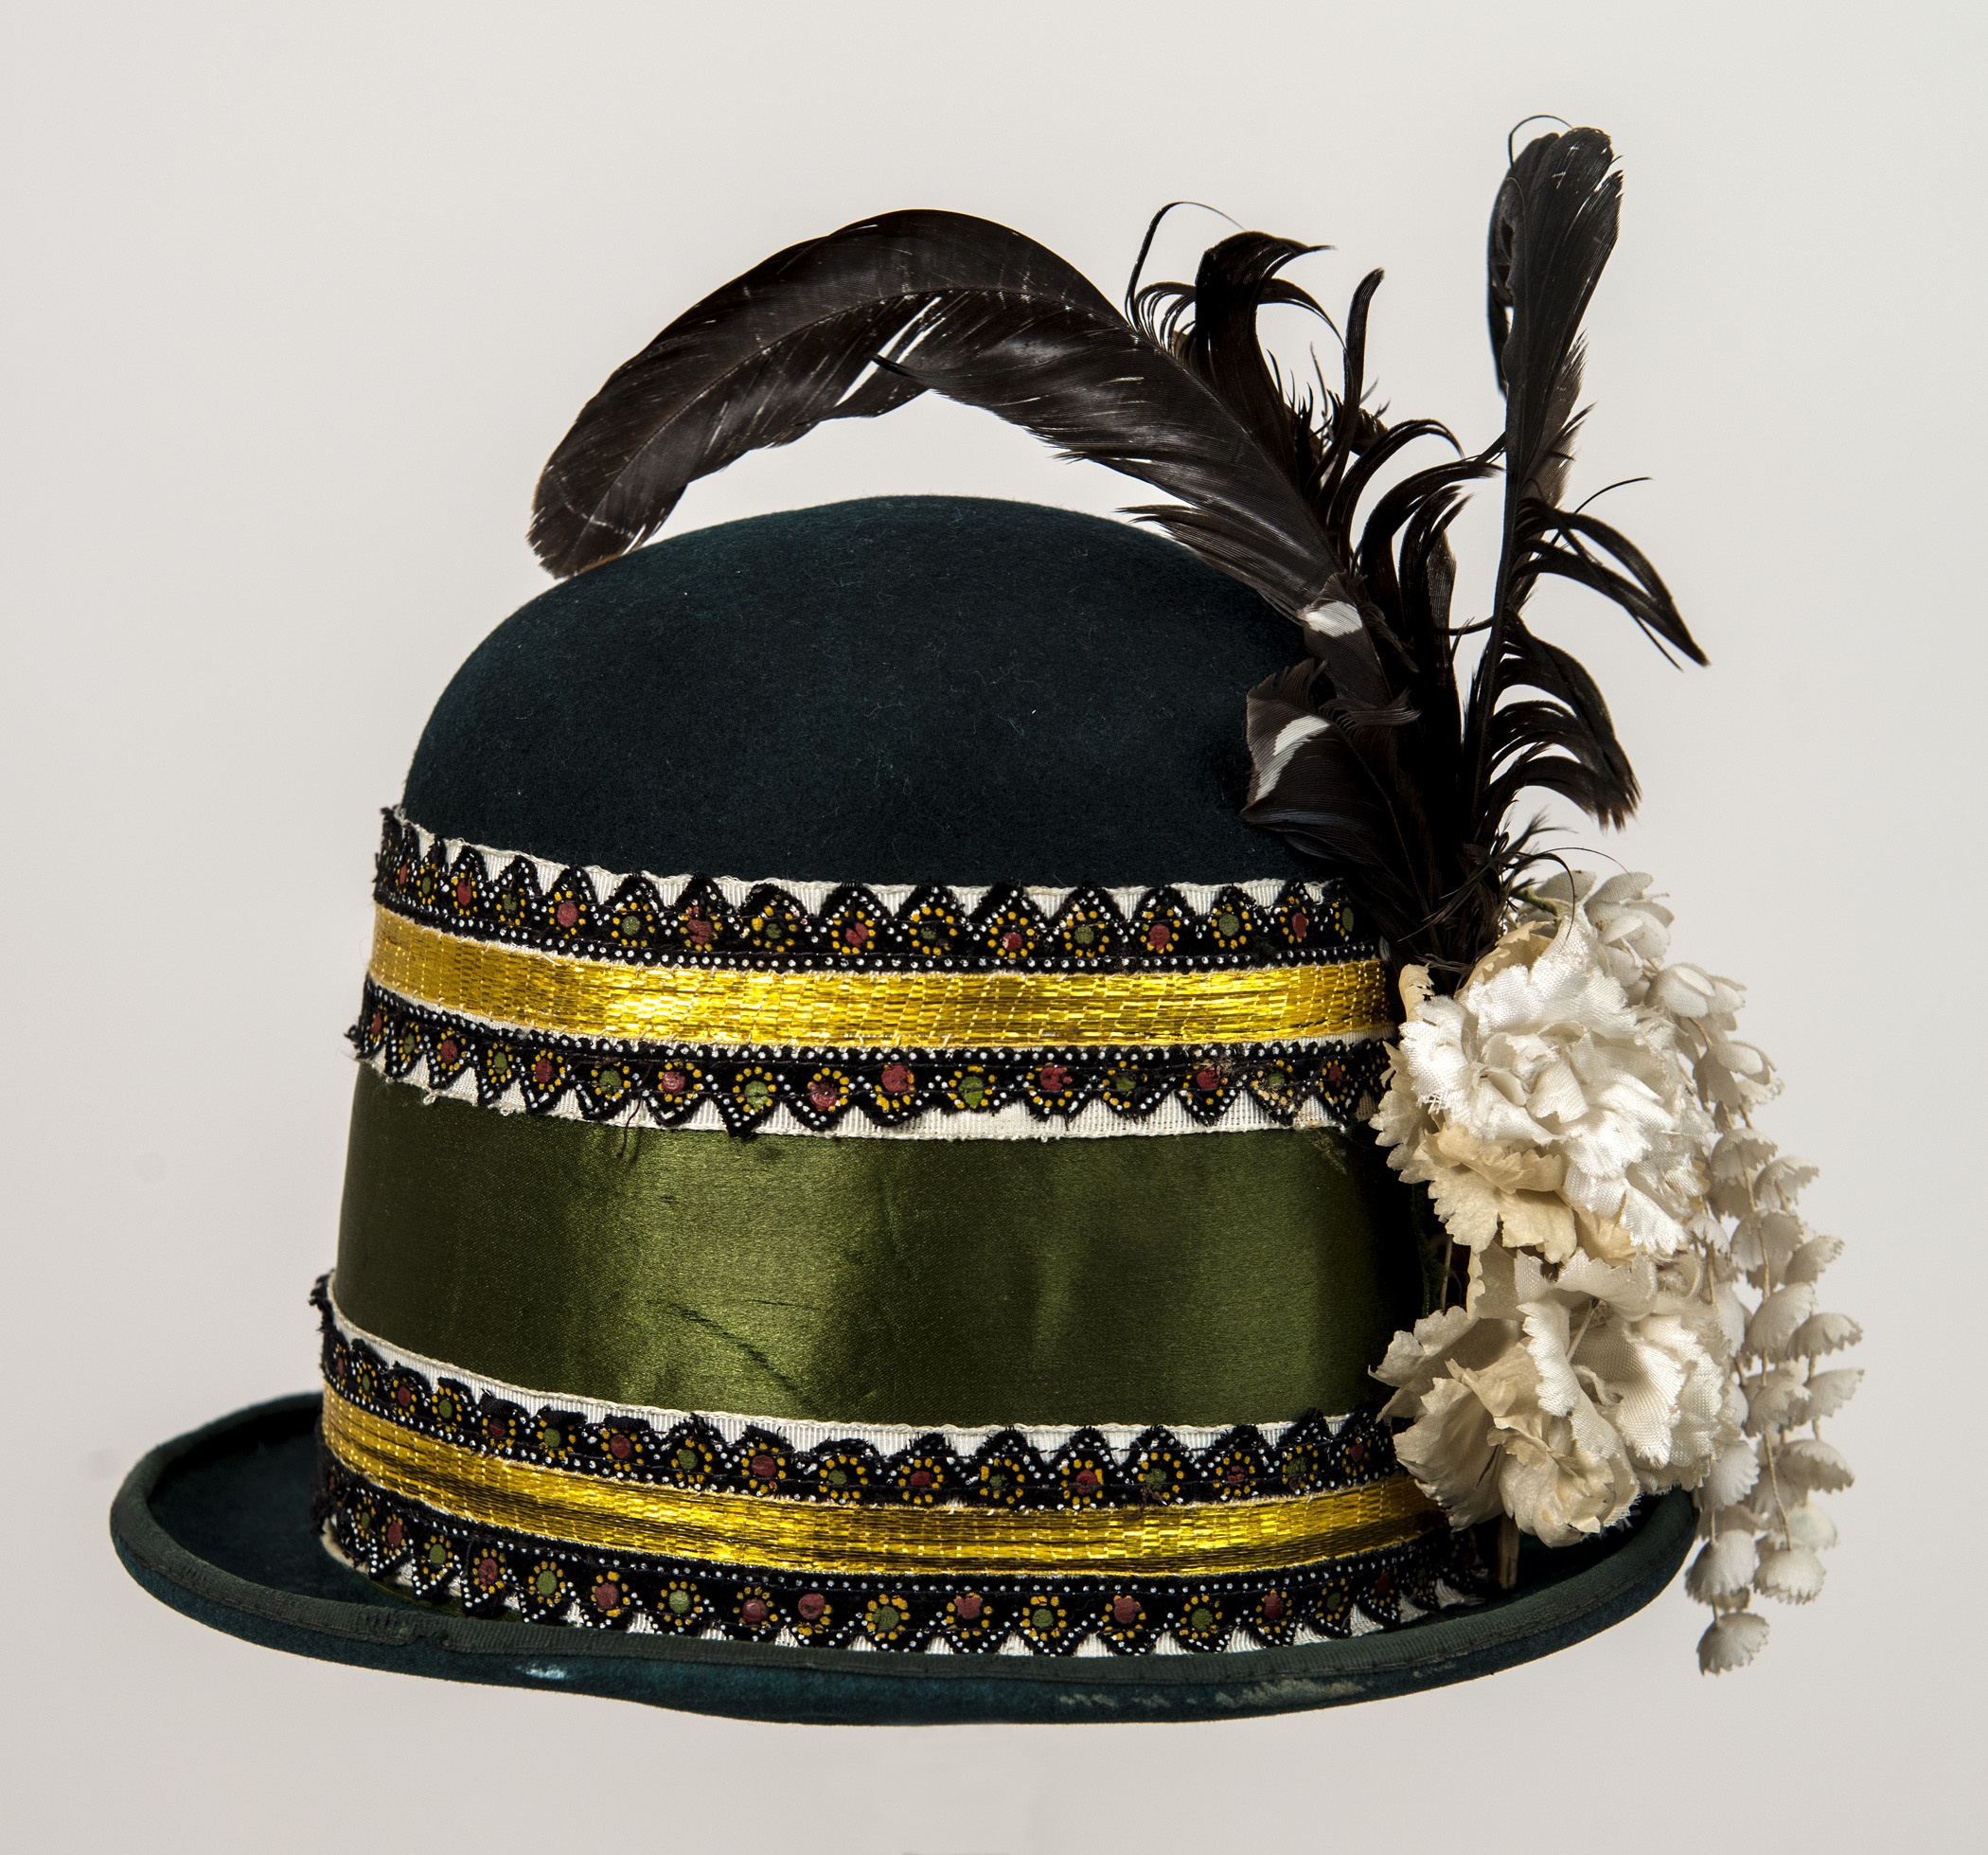 Legény kalap, "kisbarcis" kalap (Matyó Múzeum, Mezőkövesd CC BY-NC-SA)